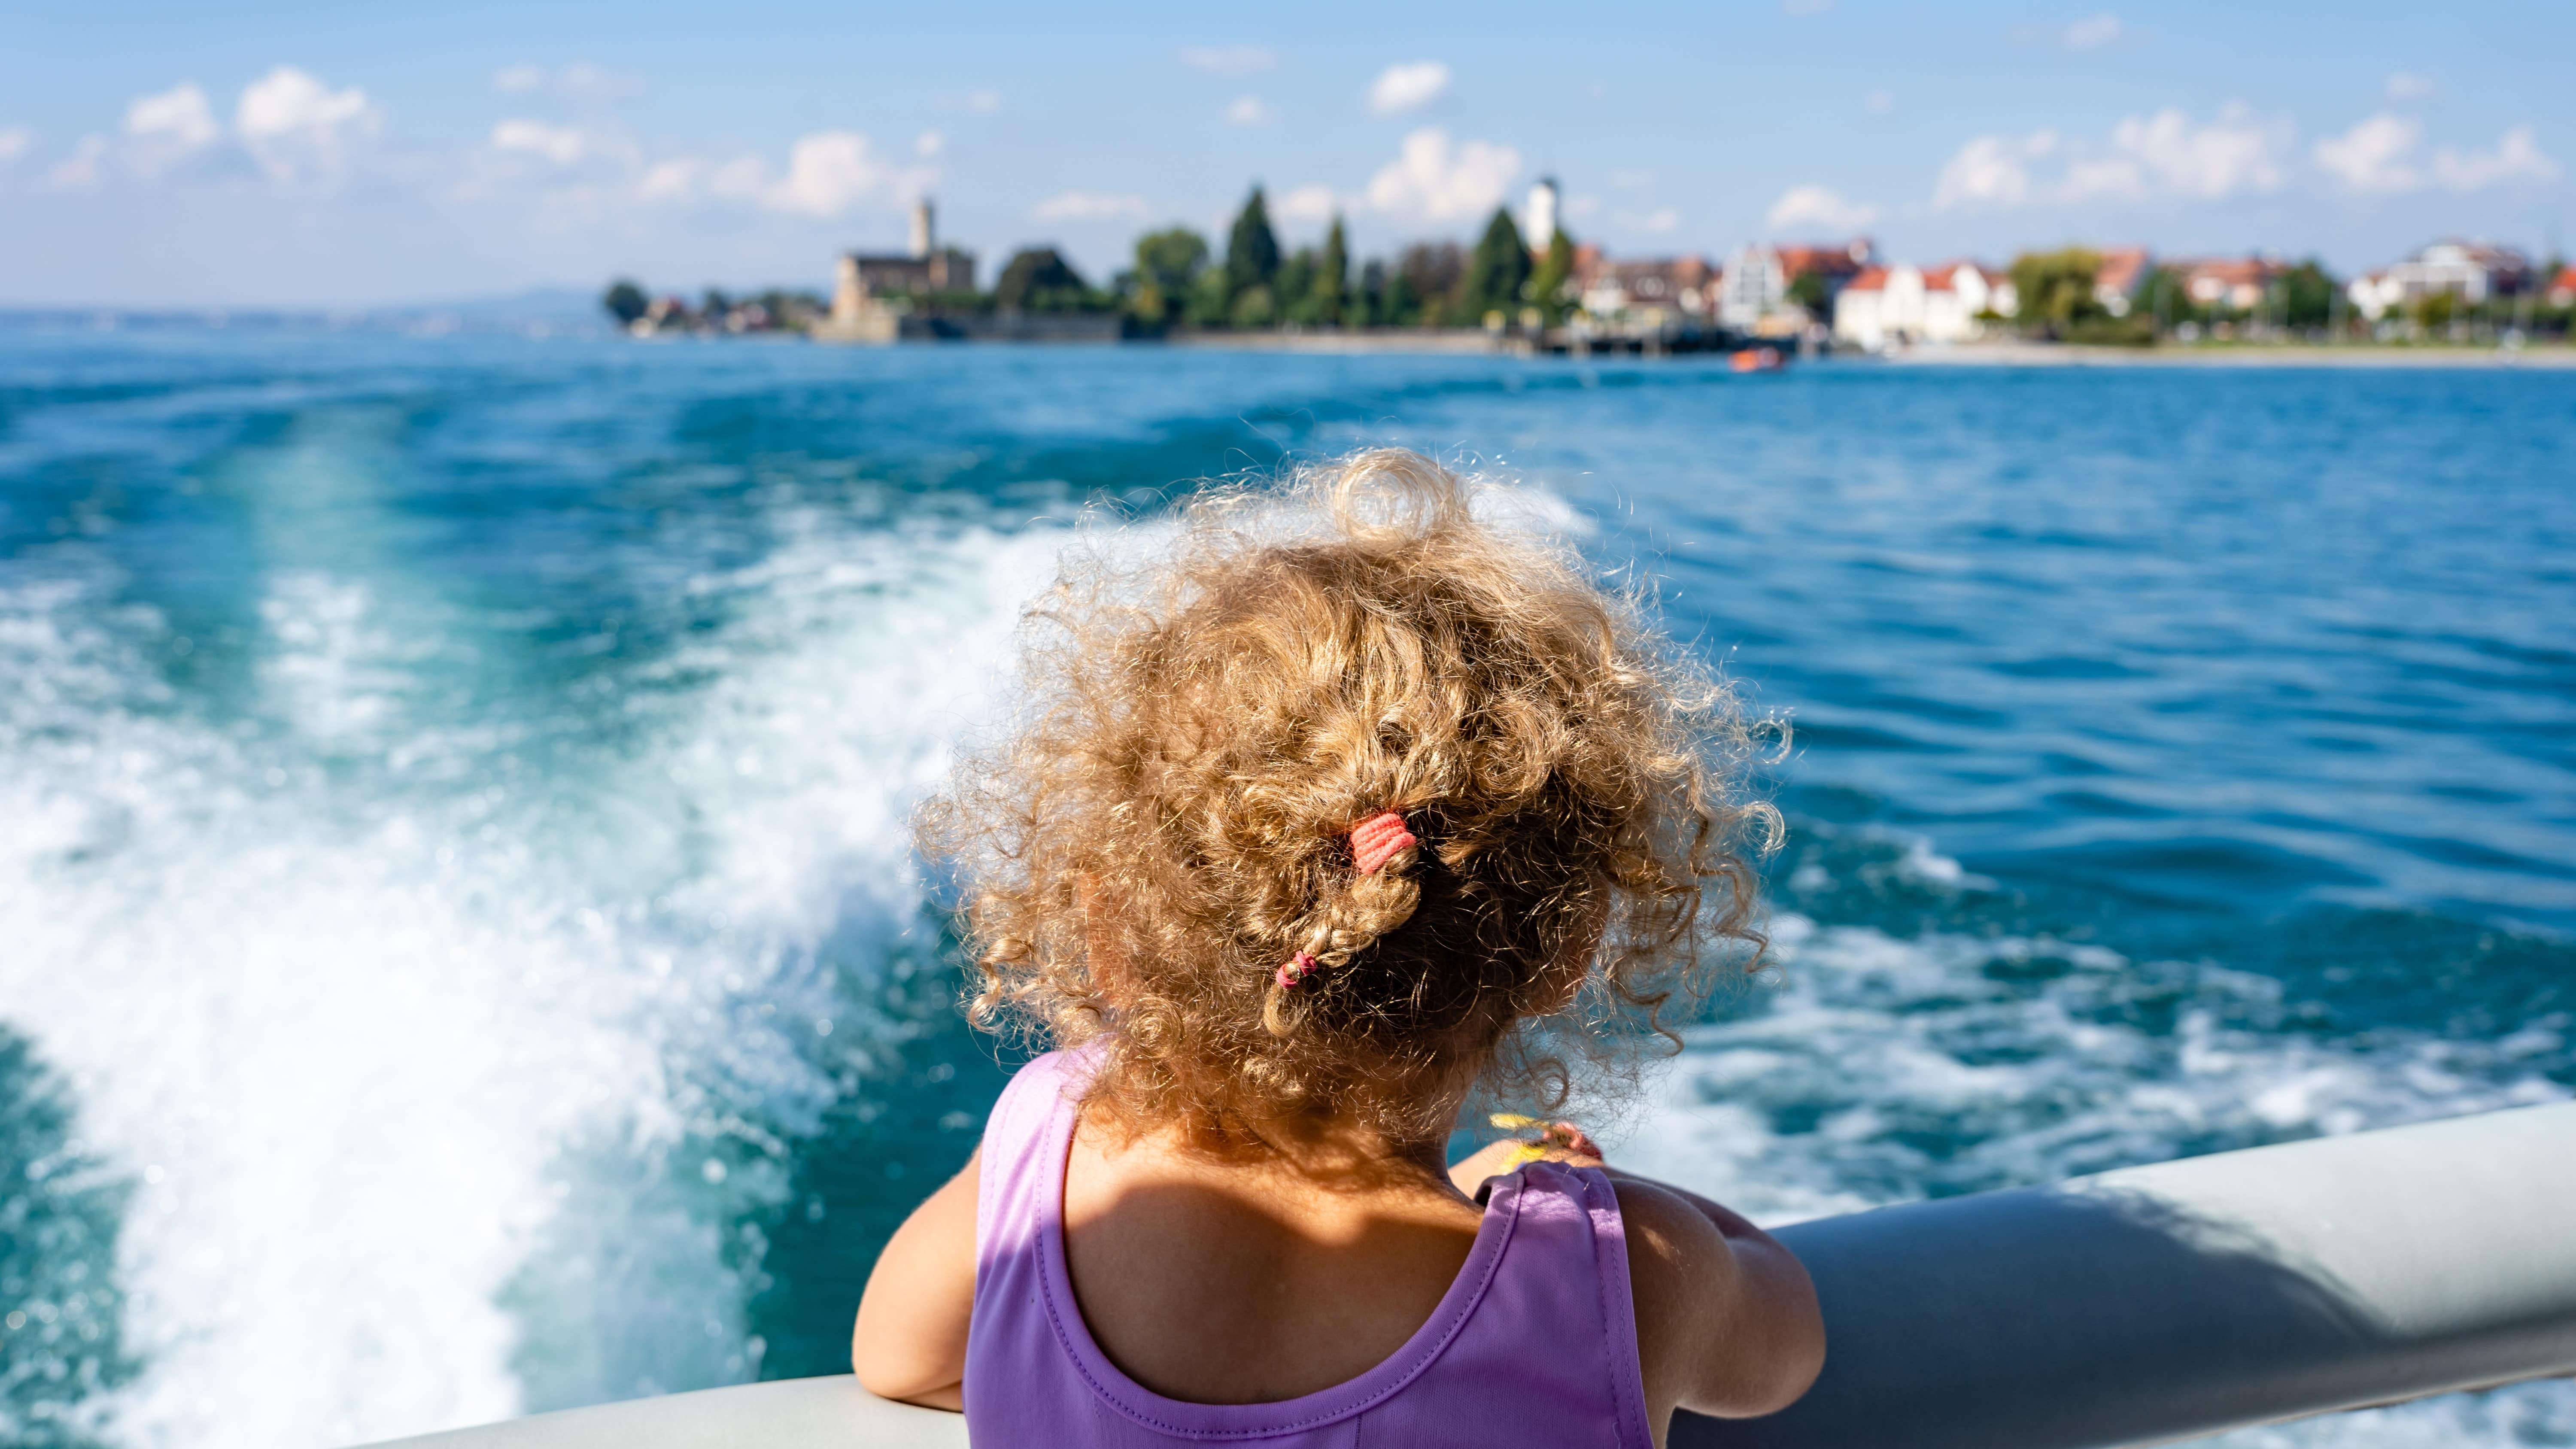 Bodenseeurlaub mit Kind – Tipps für einen wunderschönen Urlaub